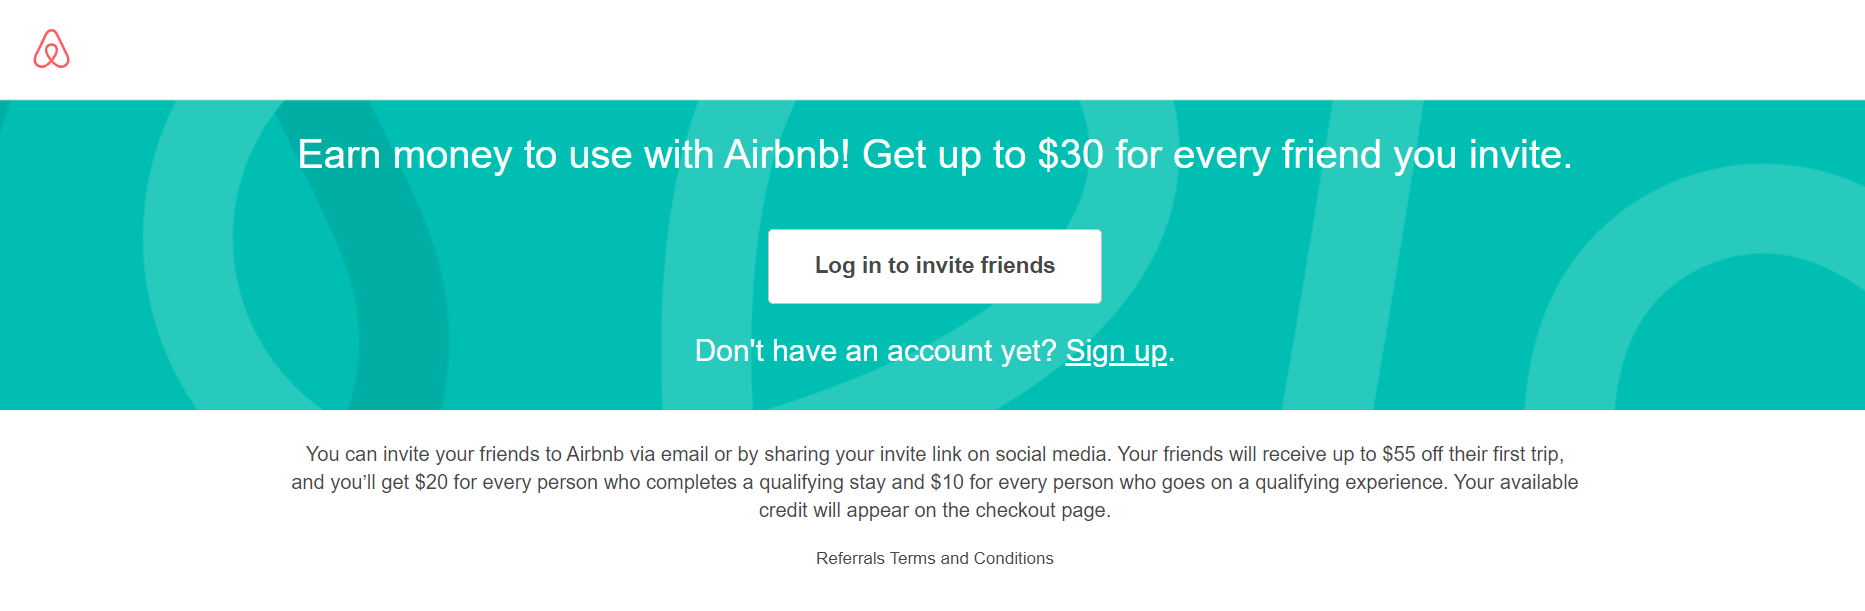 Anmeldung zum Airbnb-Empfehlungsprogramm